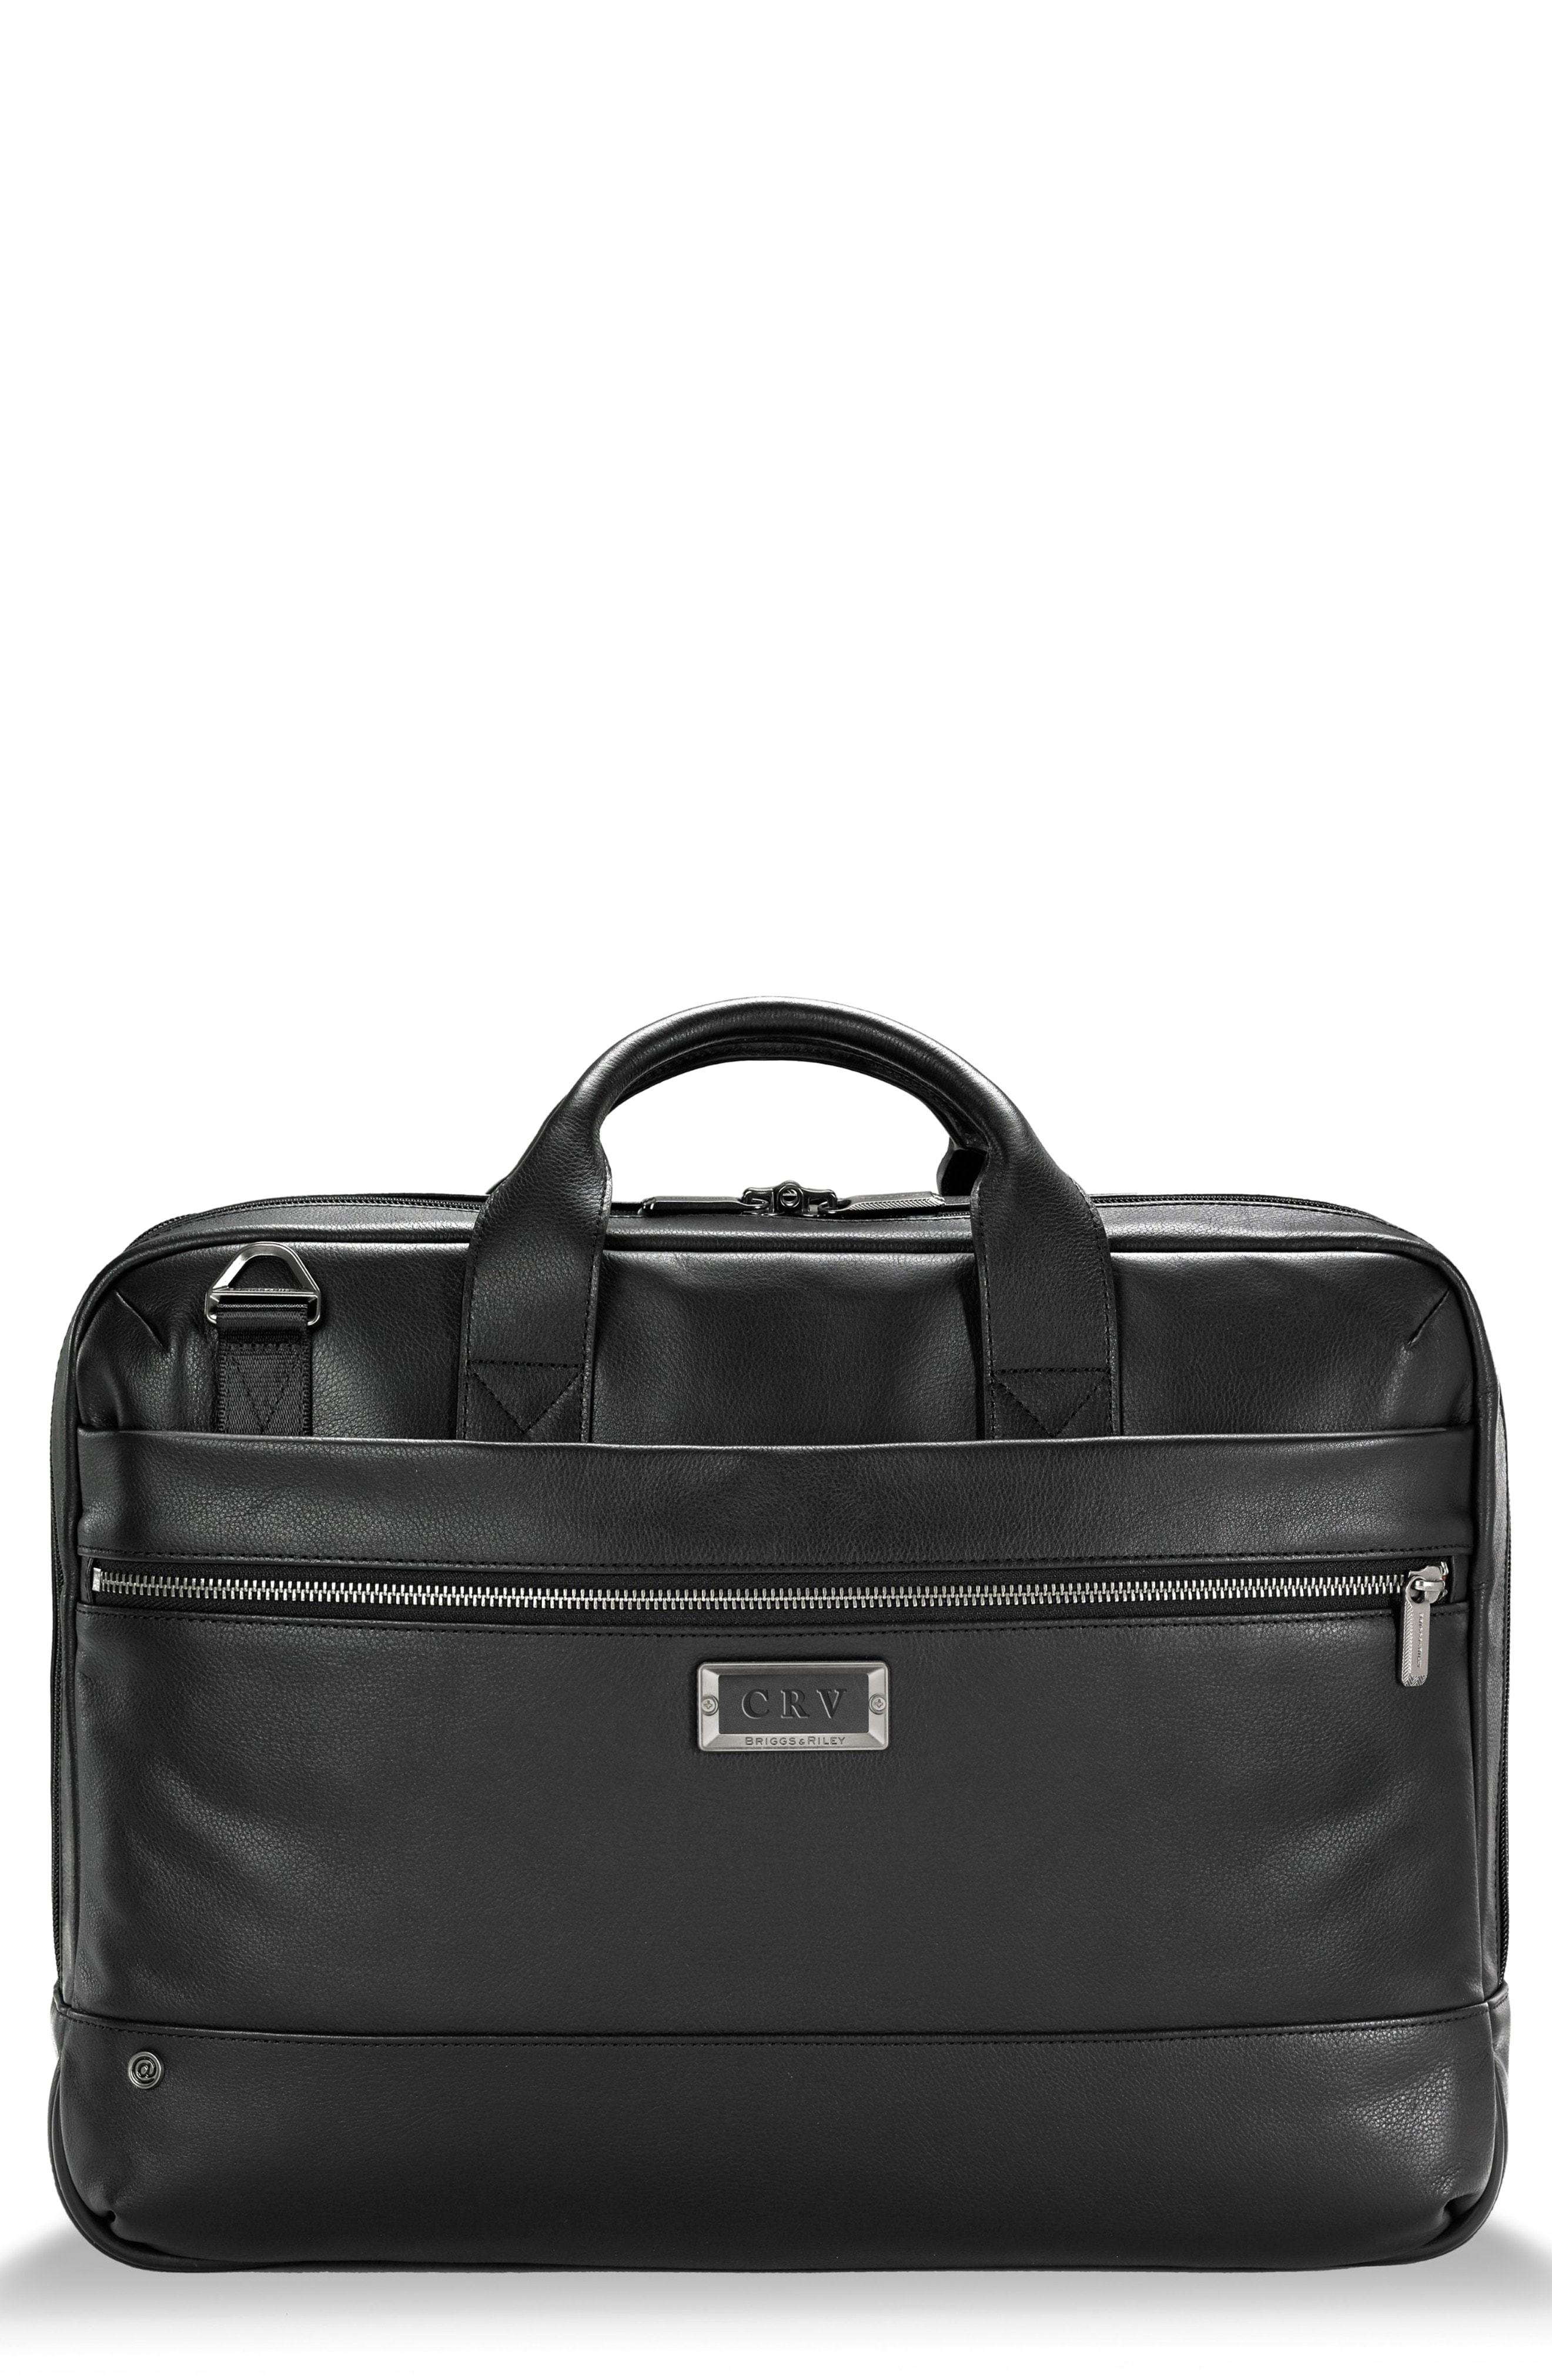 Briggs & Riley Medium Rfid Pocket Leather Briefcase, $405 | Nordstrom ...